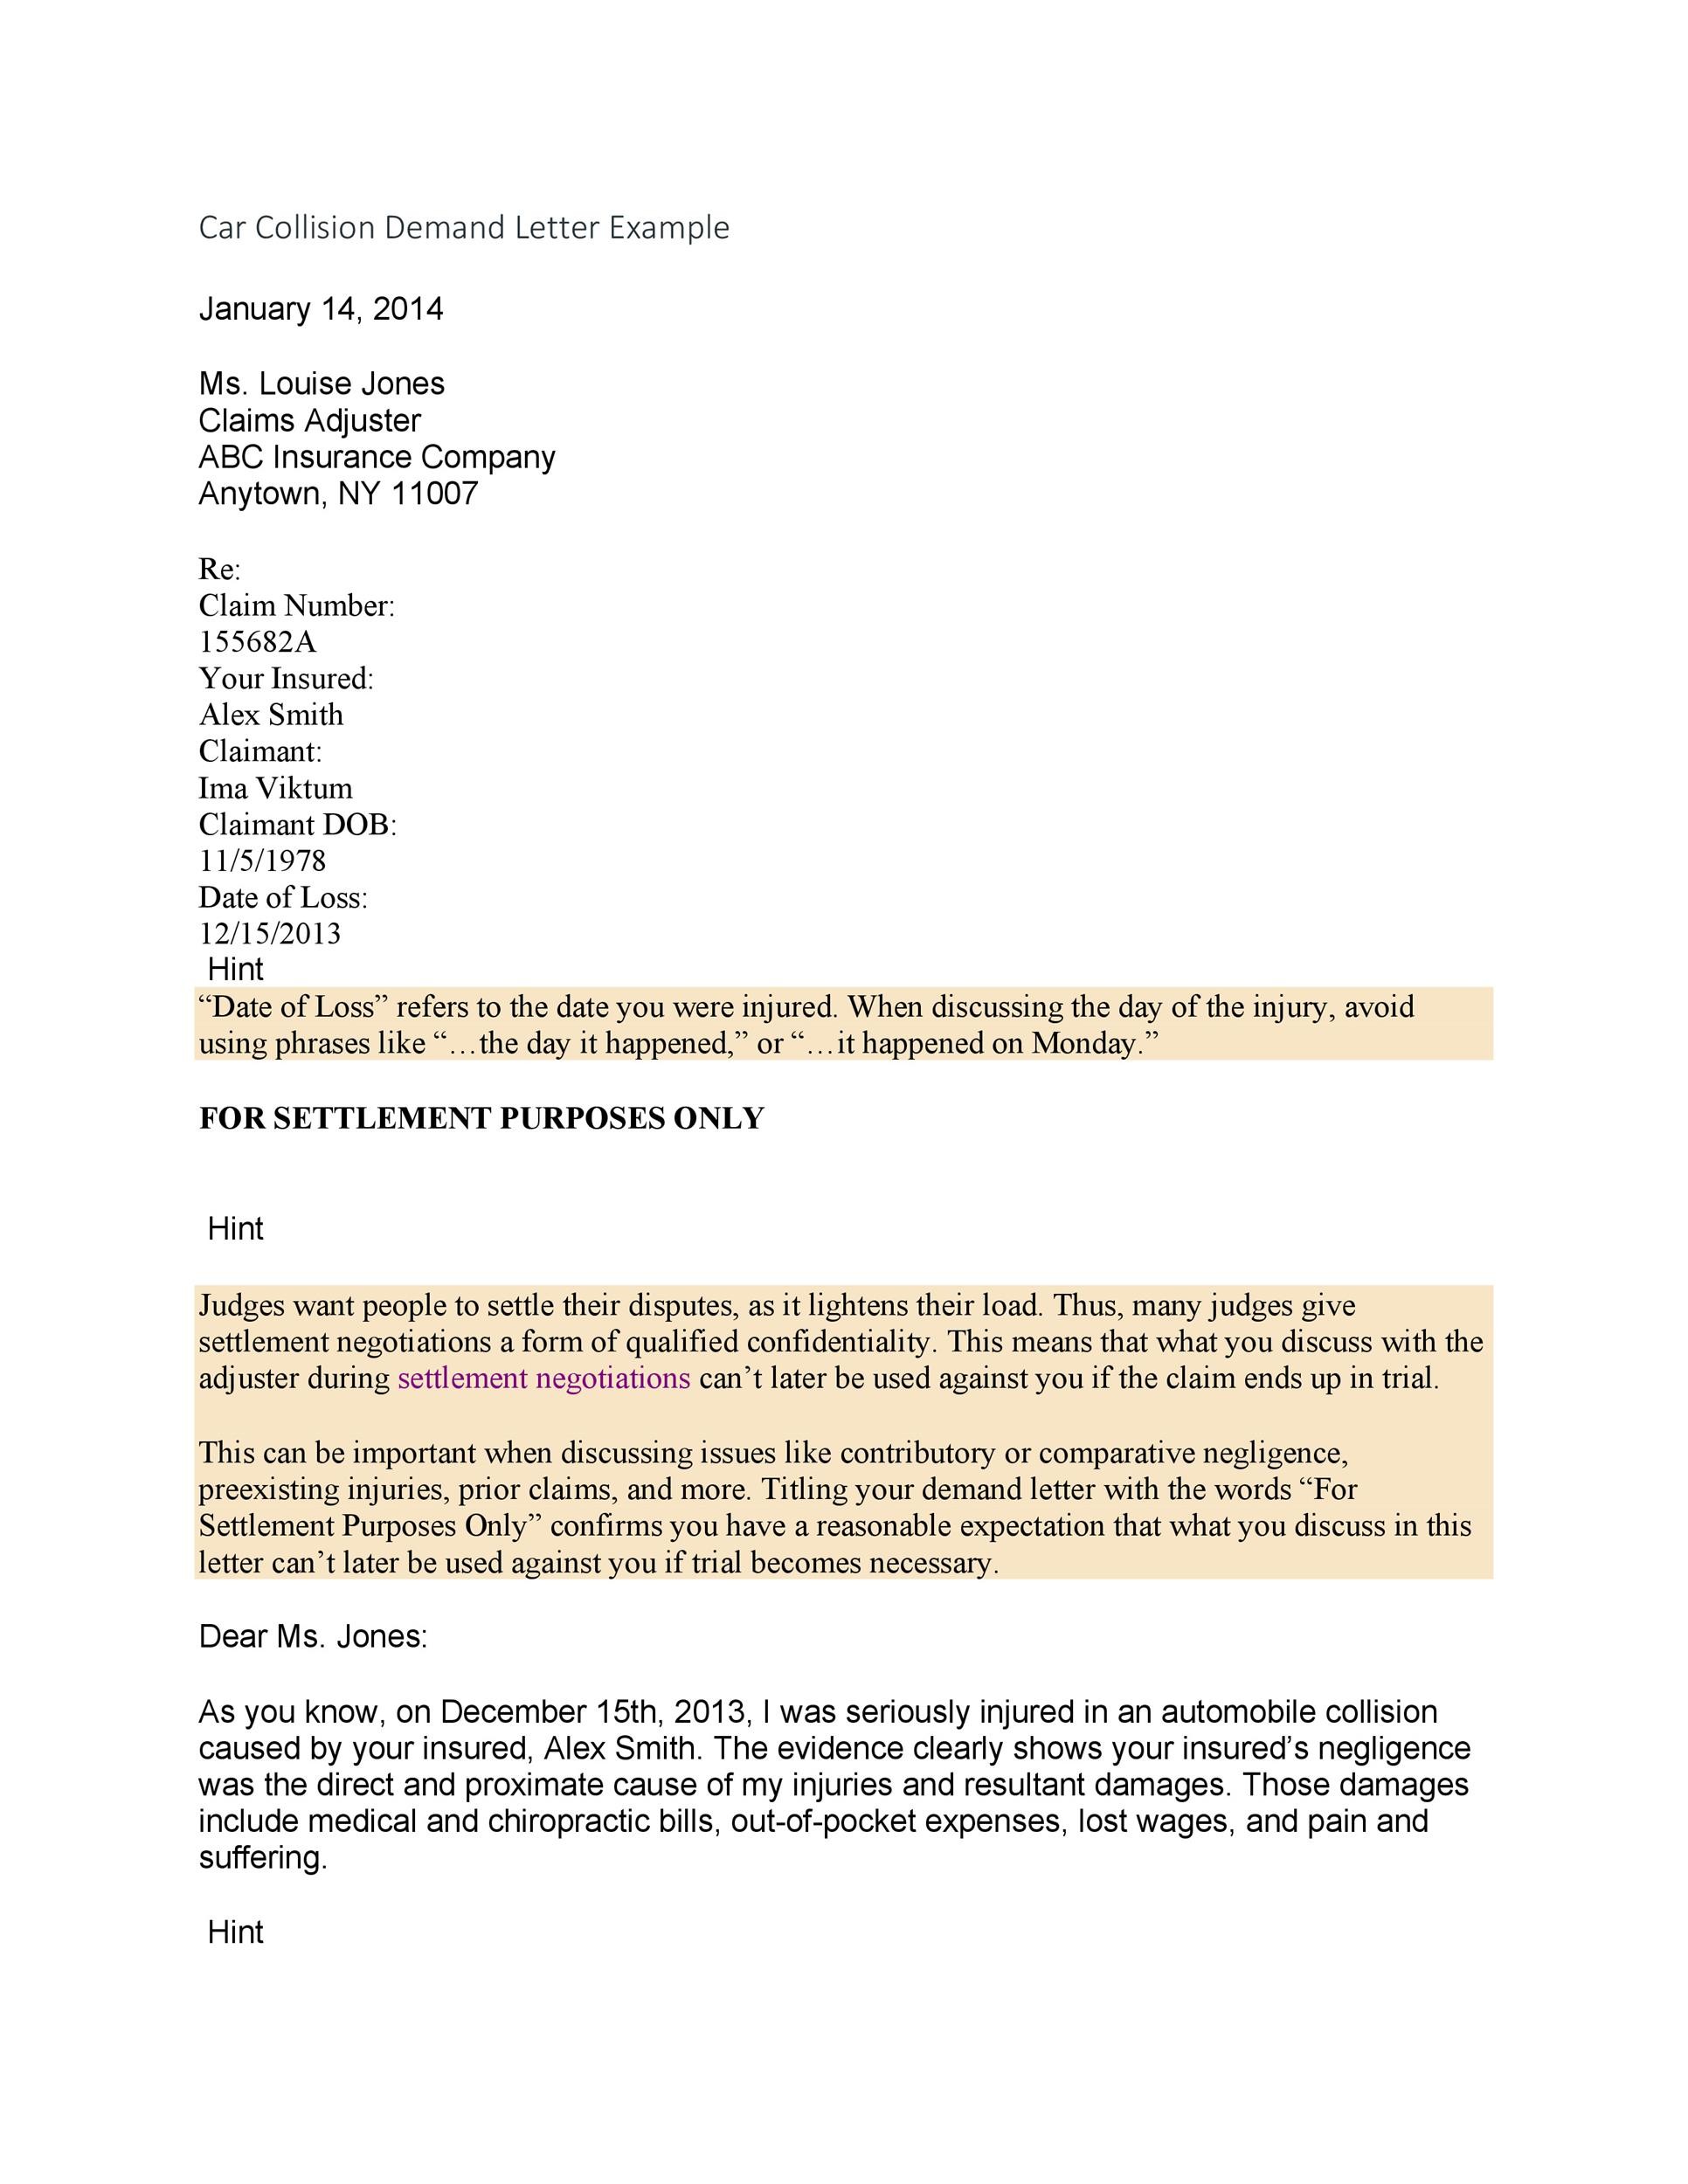 Settlement Demand Letter Sample